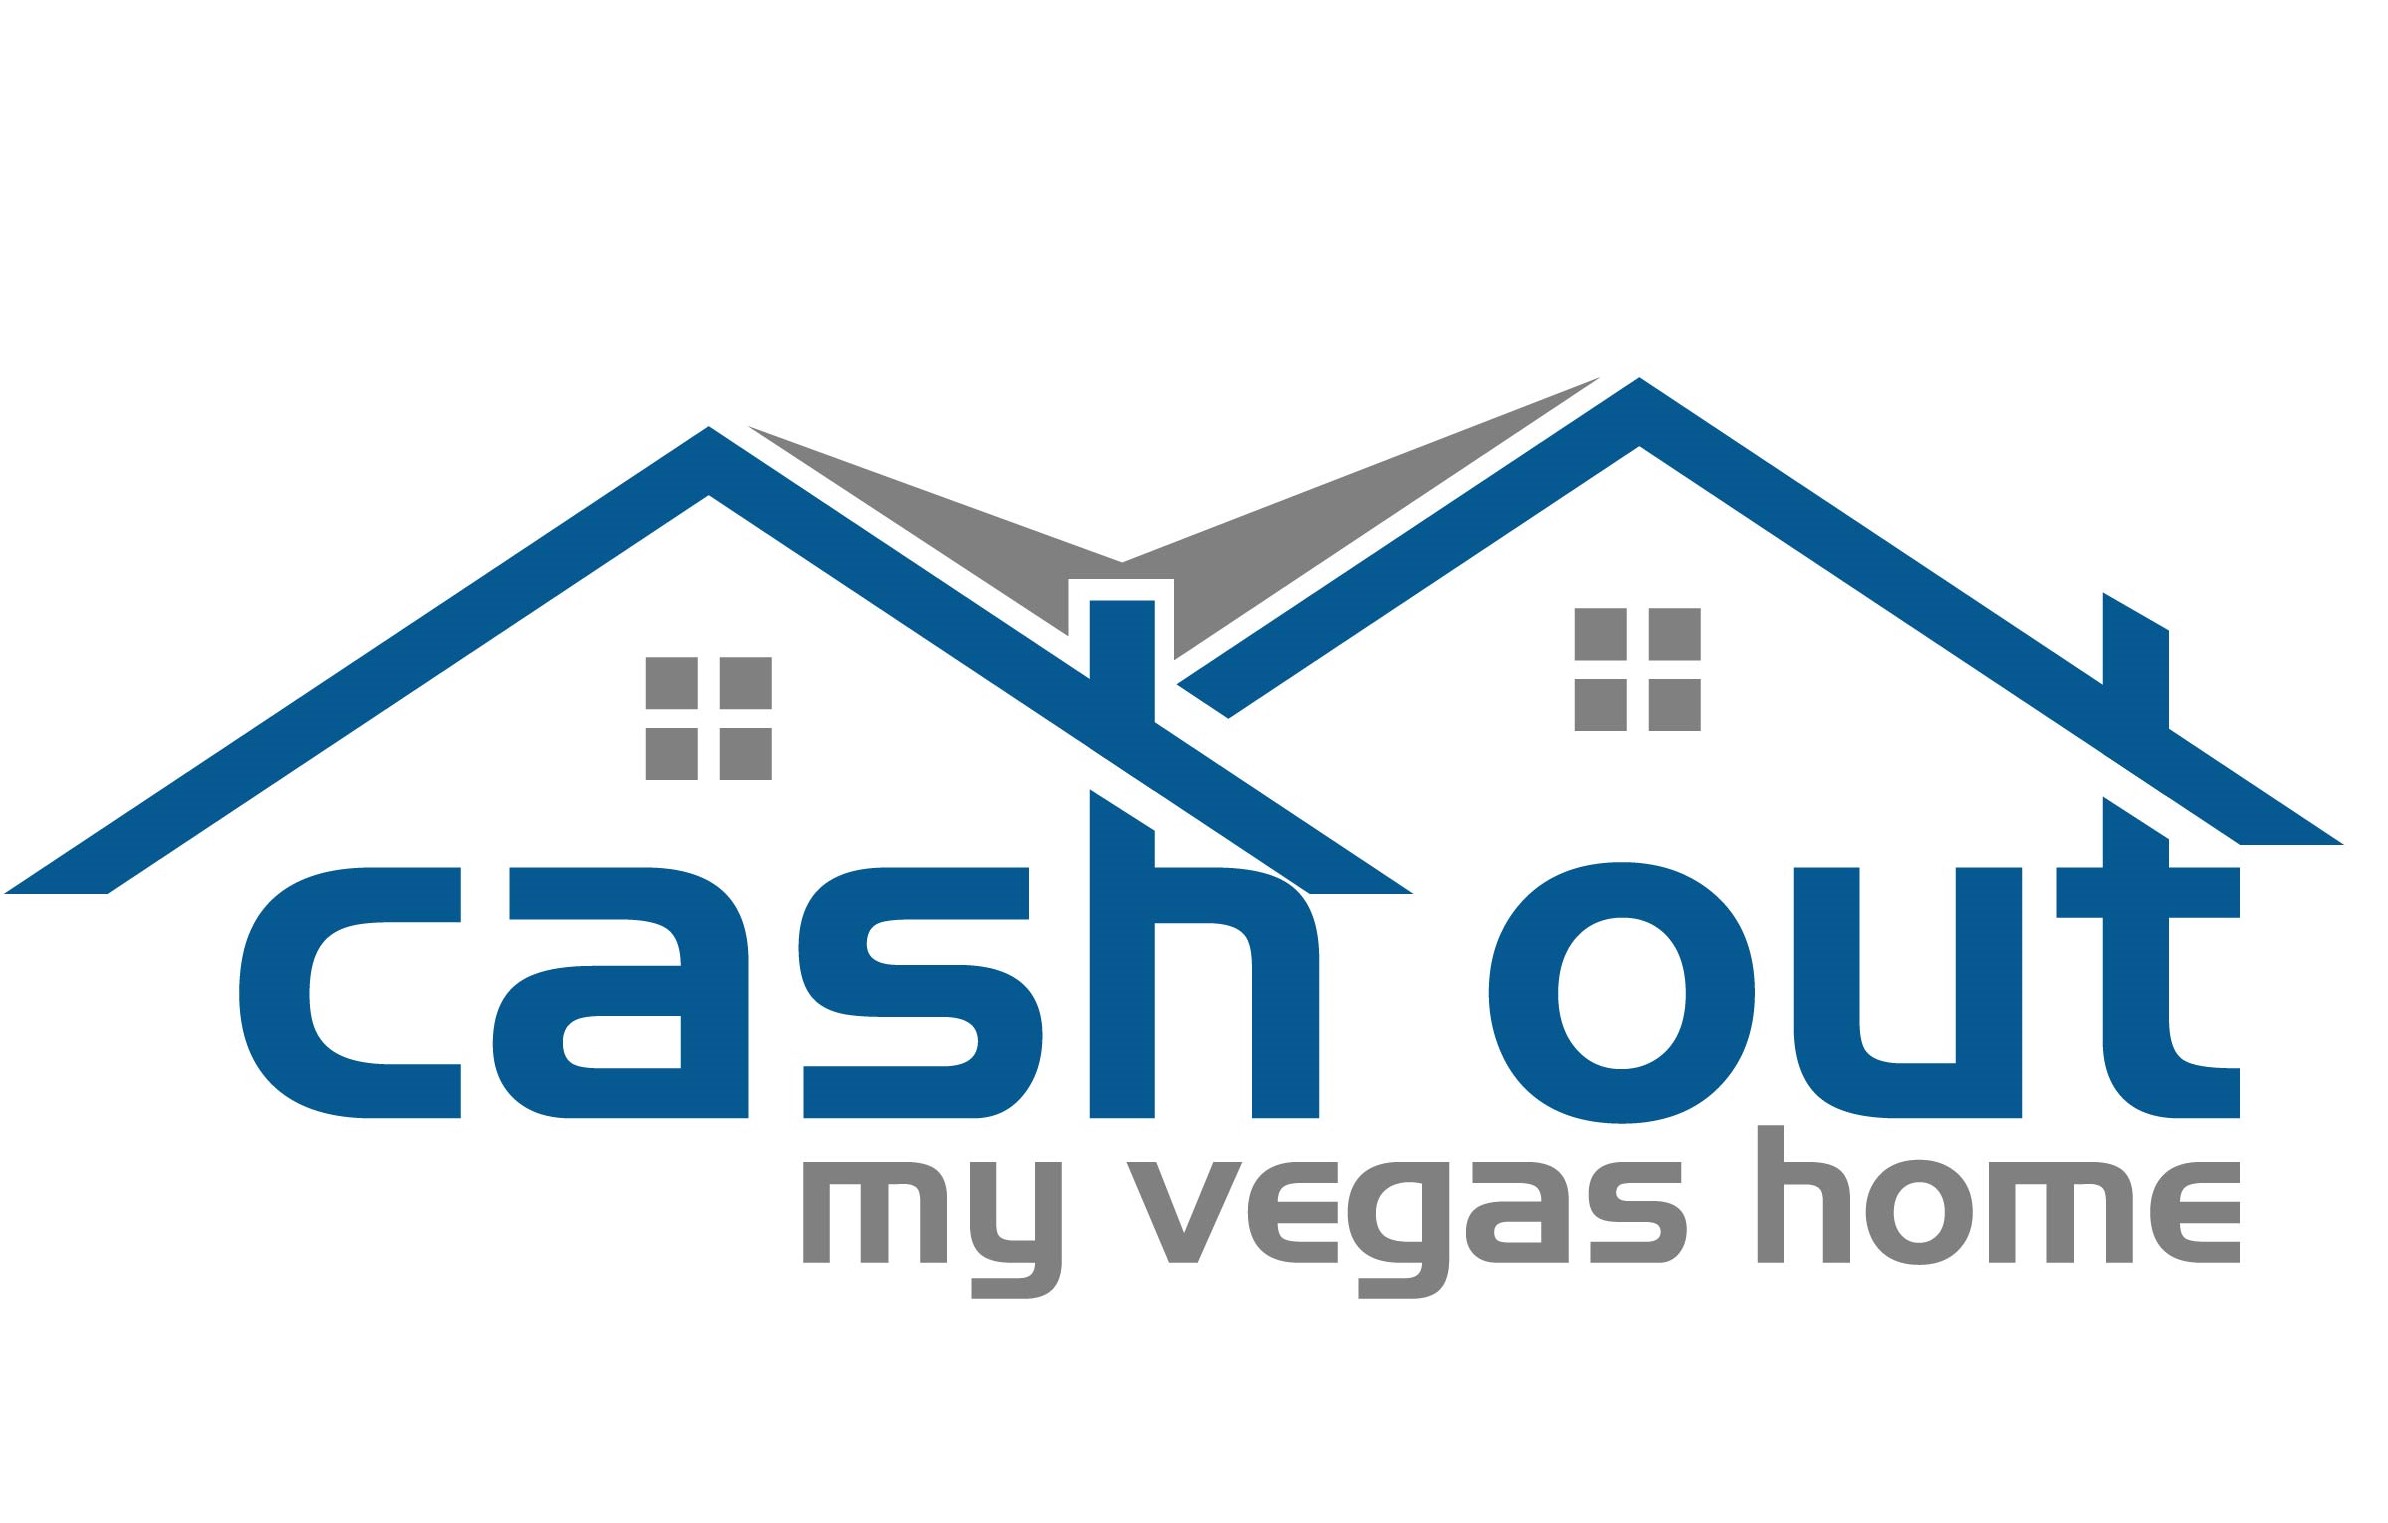 Buy My House in Las Vegas - Sell My House Fast Las Vegas